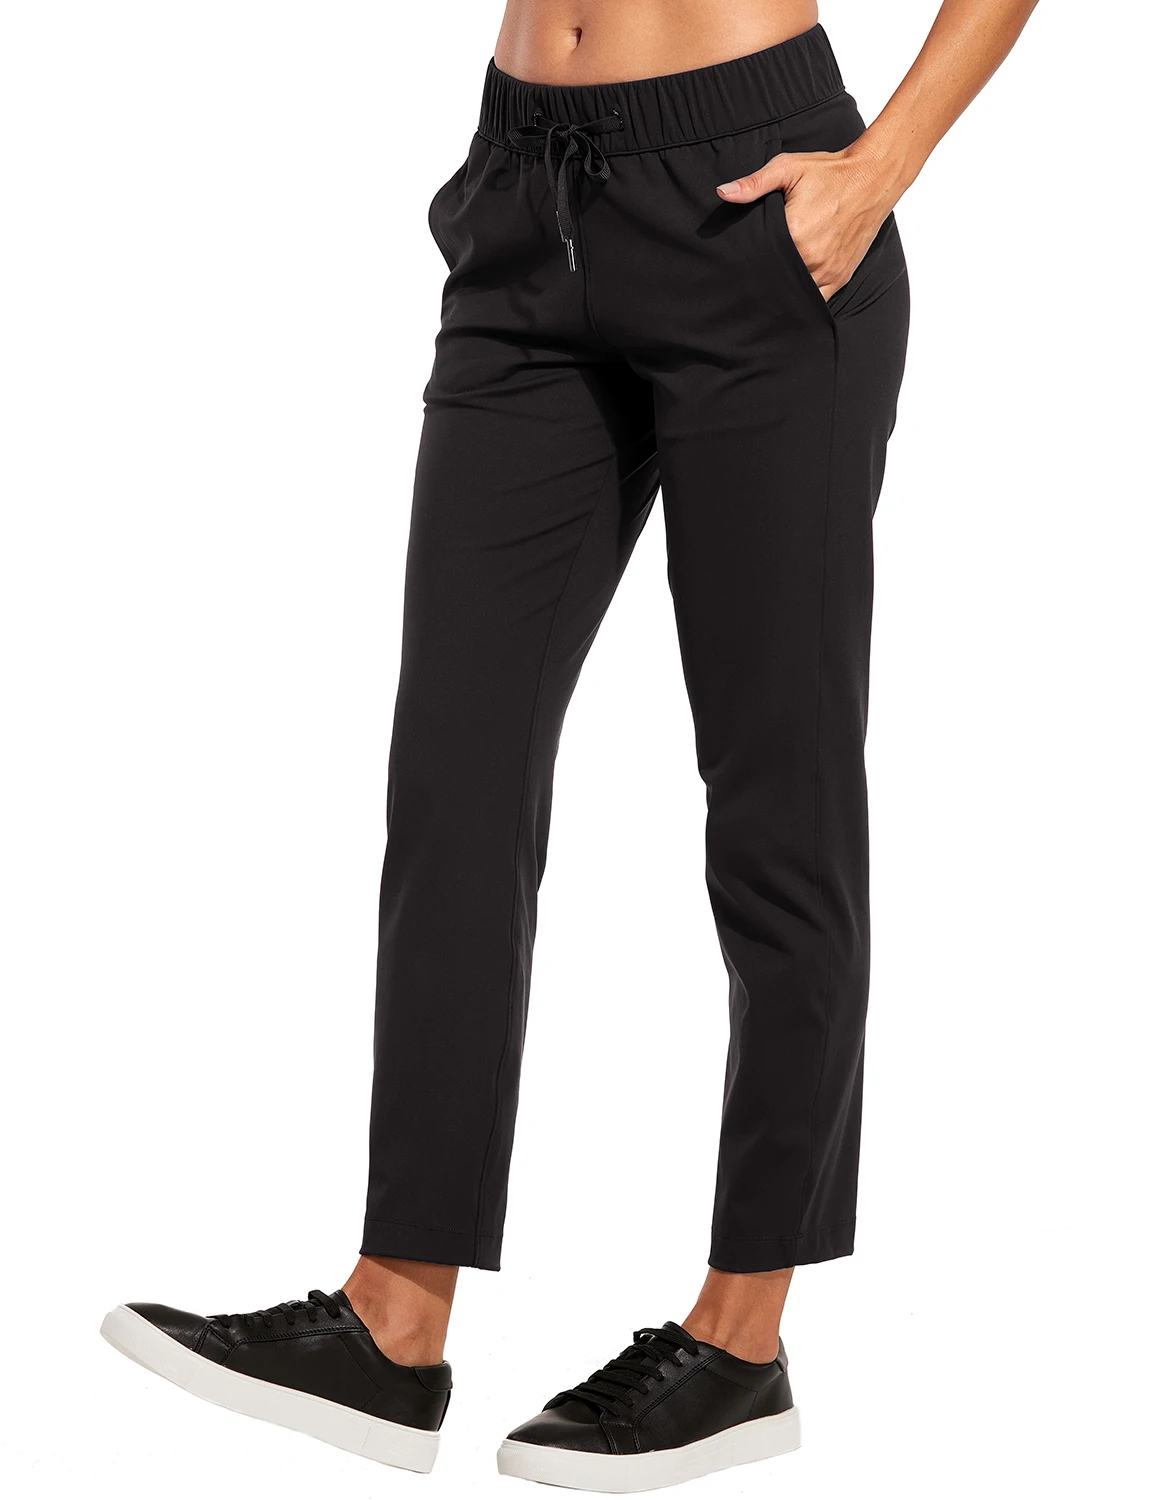 La Isla женские Стрейчевые спортивные штаны на шнурке, спортивные штаны для улицы, карго, 7/8 штаны с карманами - Цвет: Black01